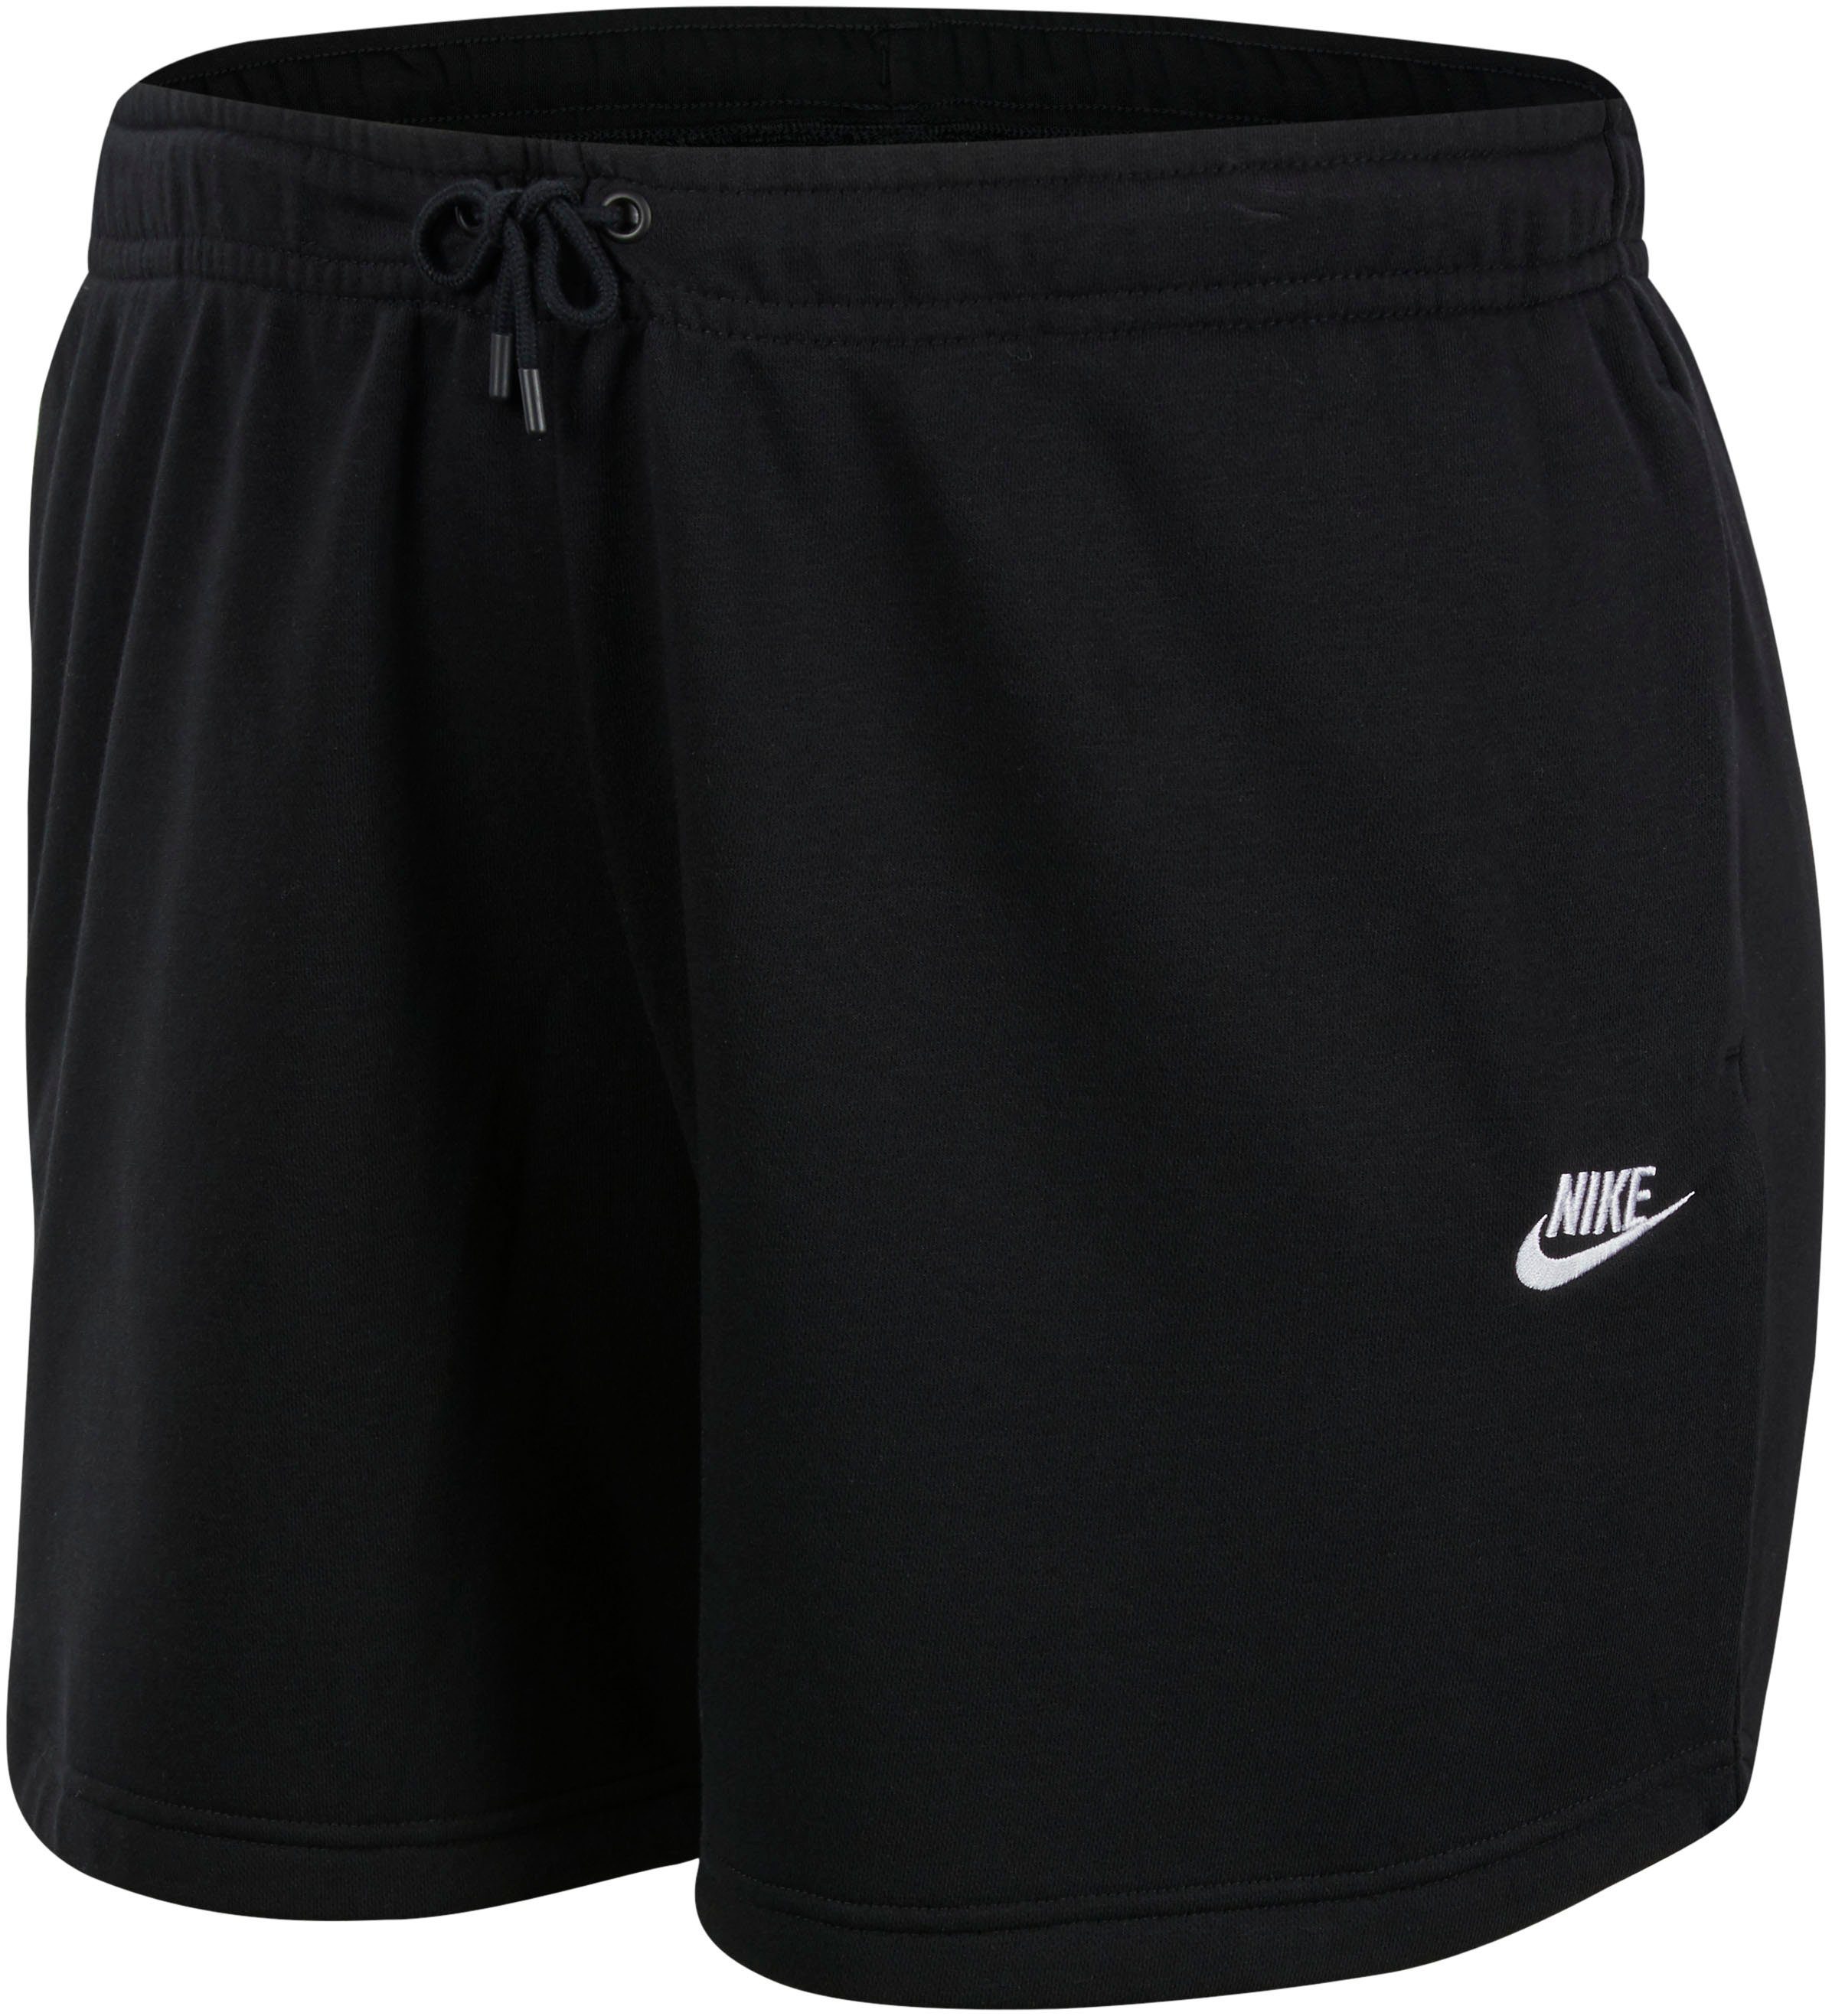 Nike Sportswear Sportswear Size Nike Sweatshorts Shorts Women's Plus